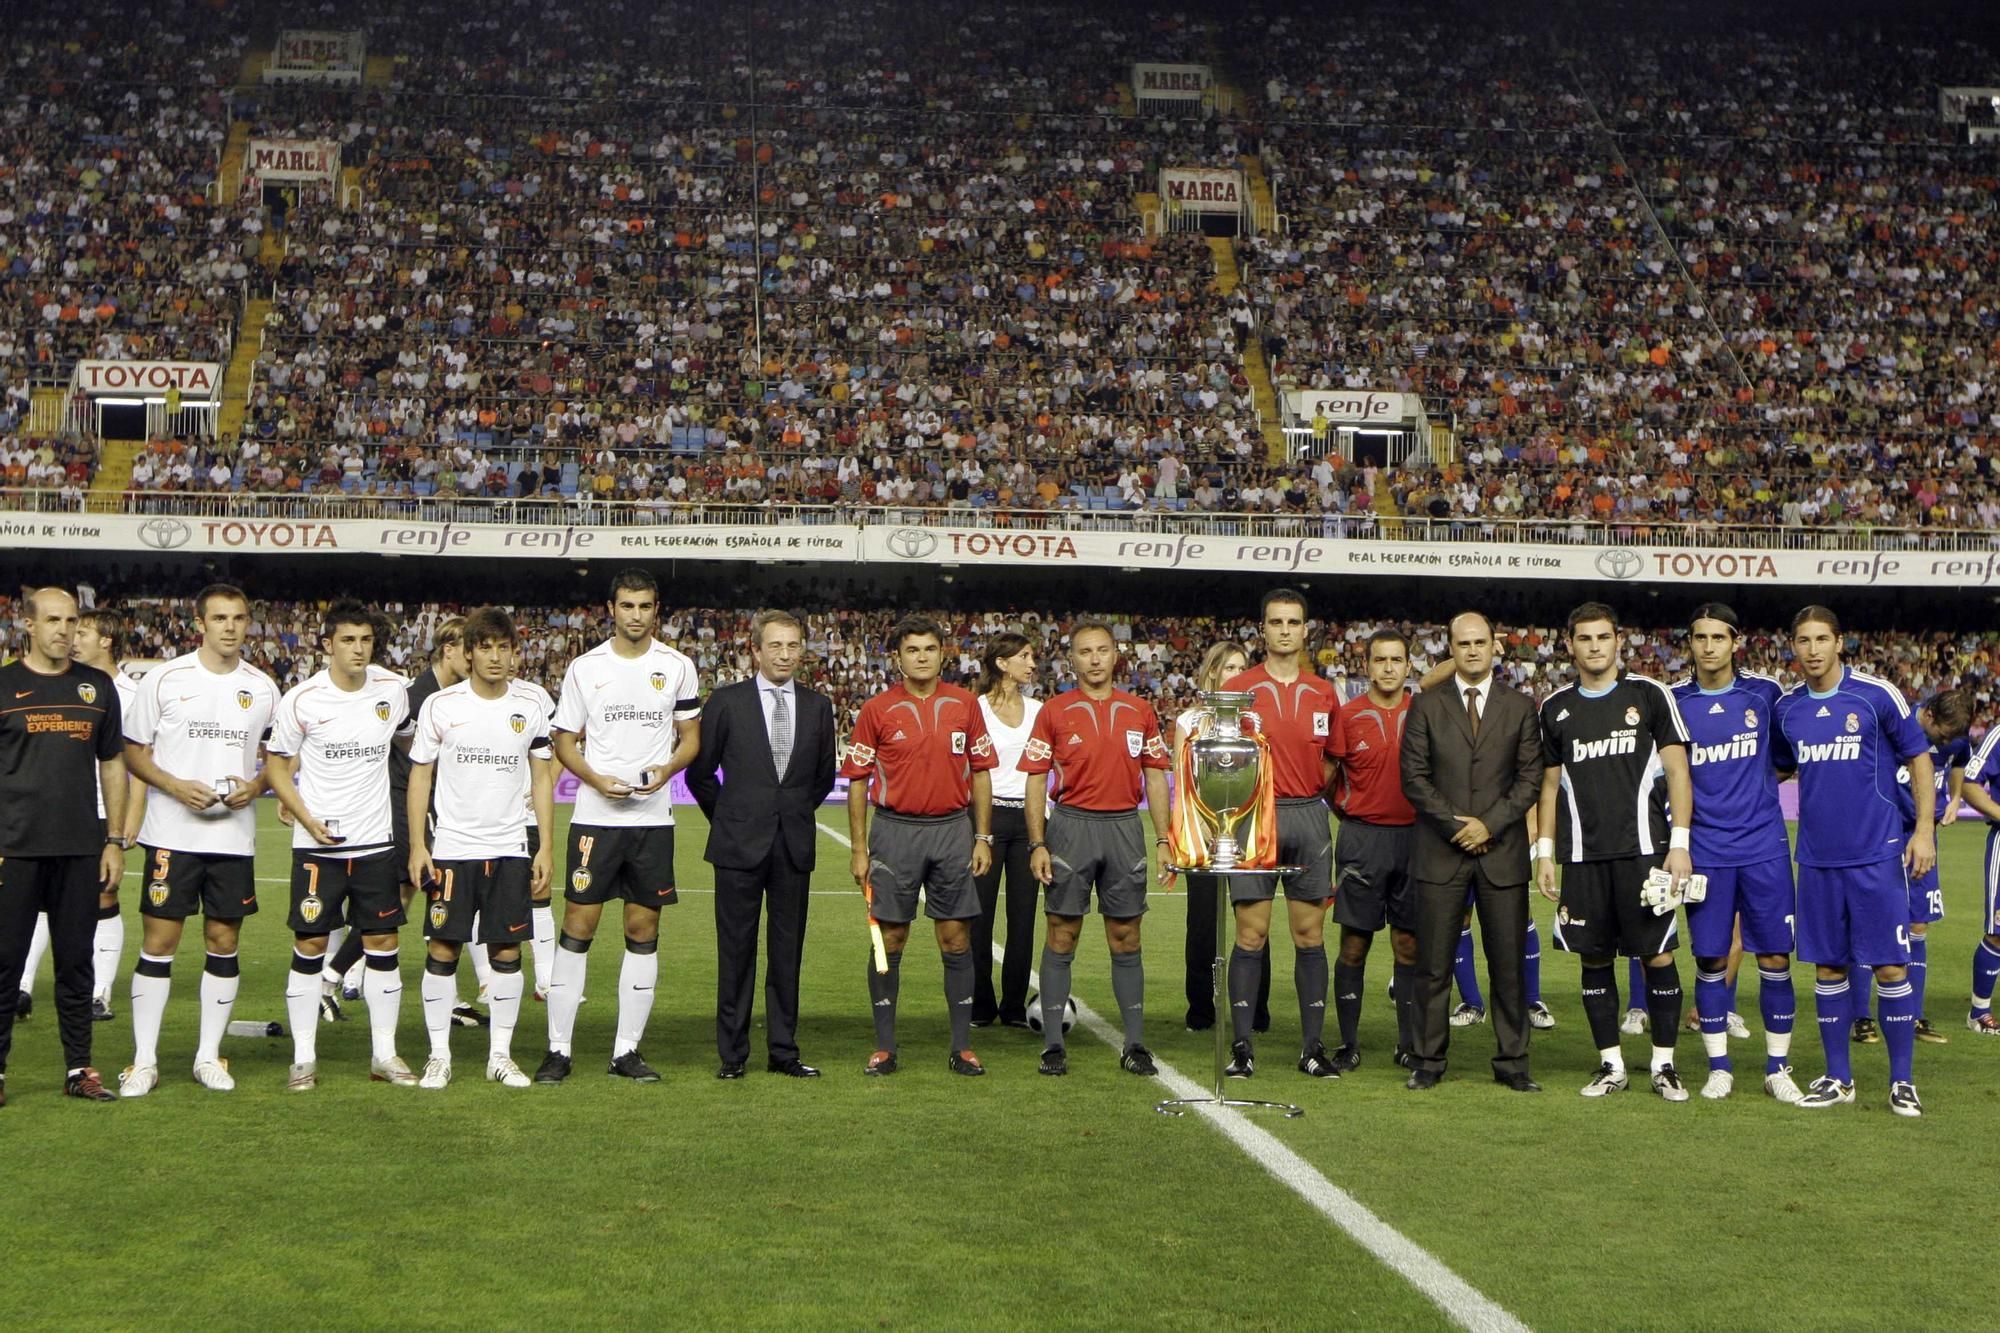 La historia del Valencia CF en la Supercopa, en imágenes